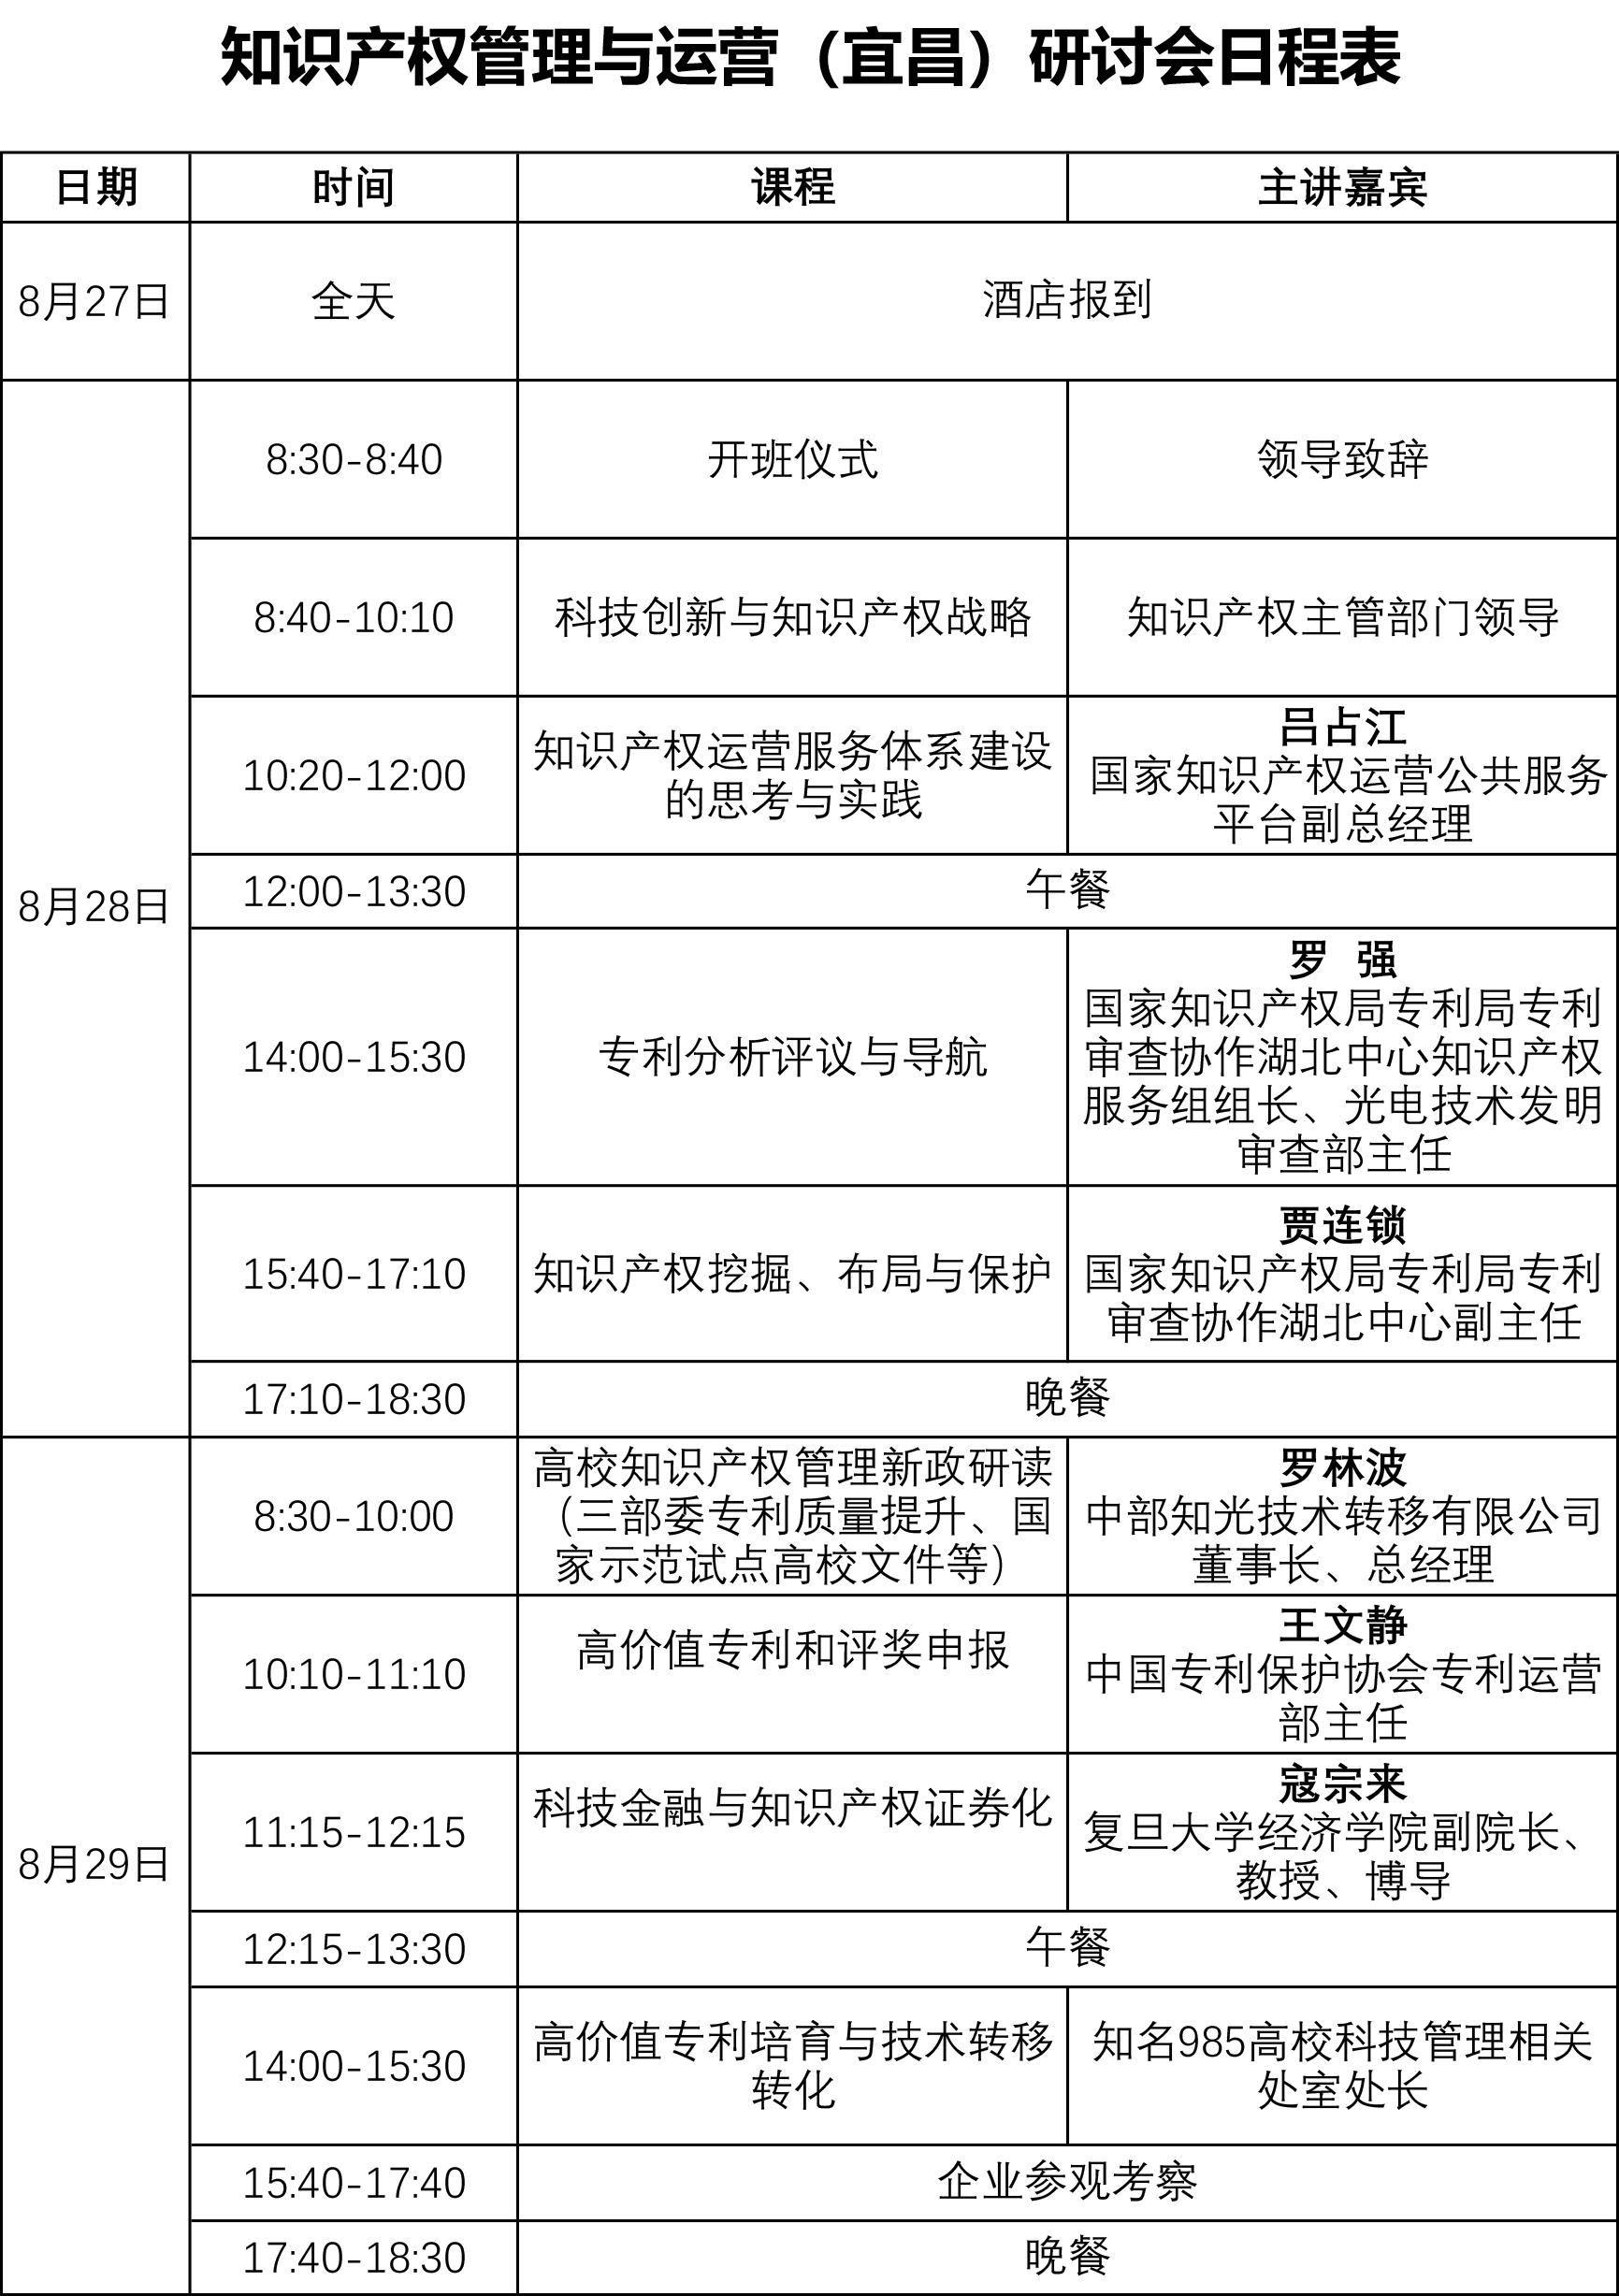 知识产权管理与运营研讨会8月宜昌